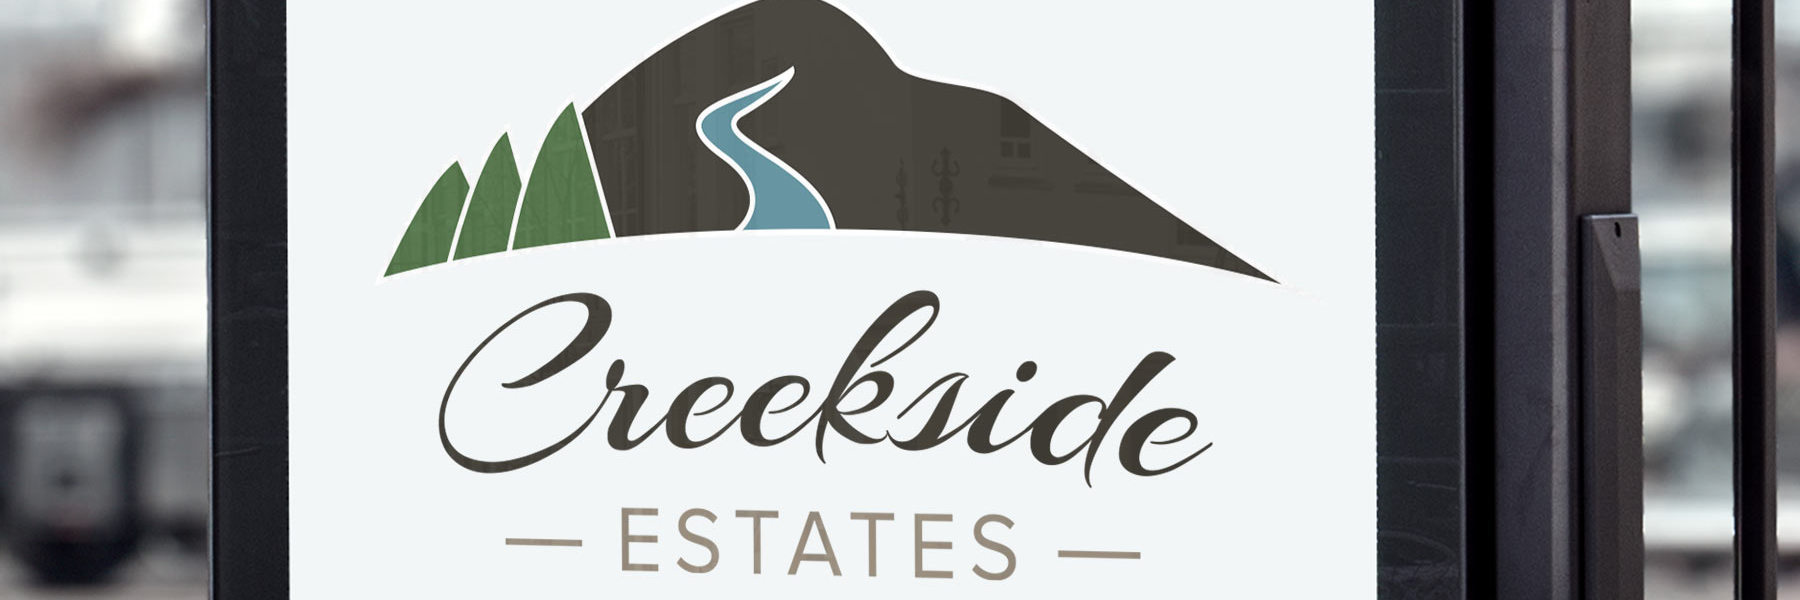 Creekside Estates logo on sign